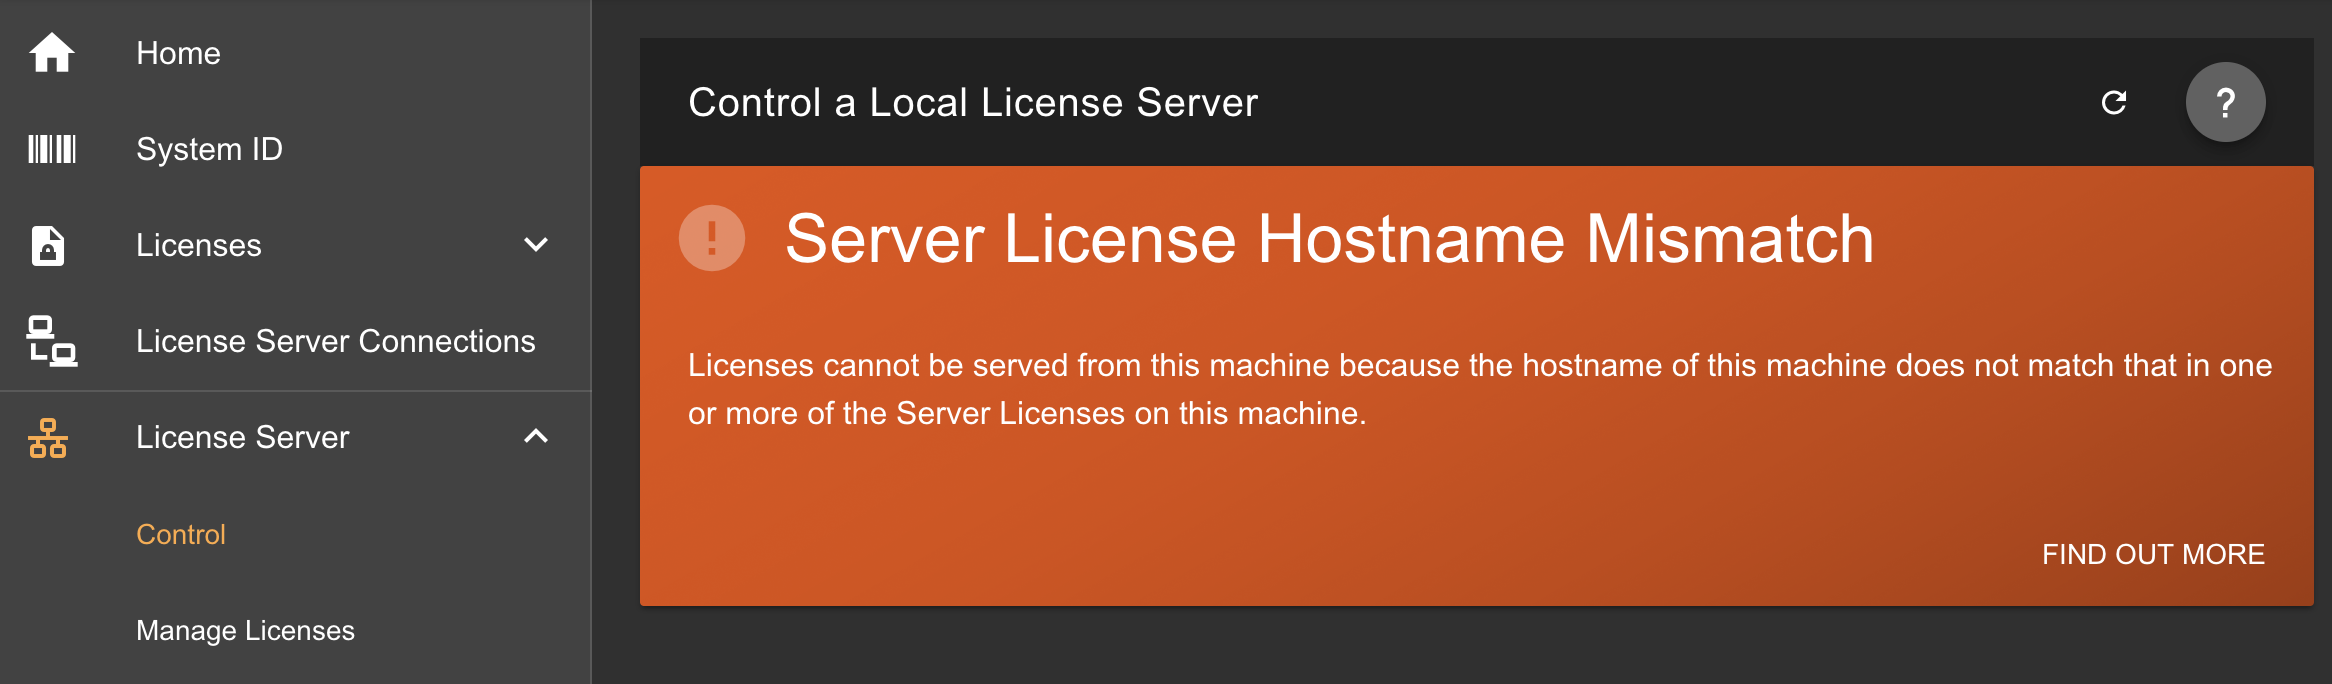 phpstorm license server 2018.1.5